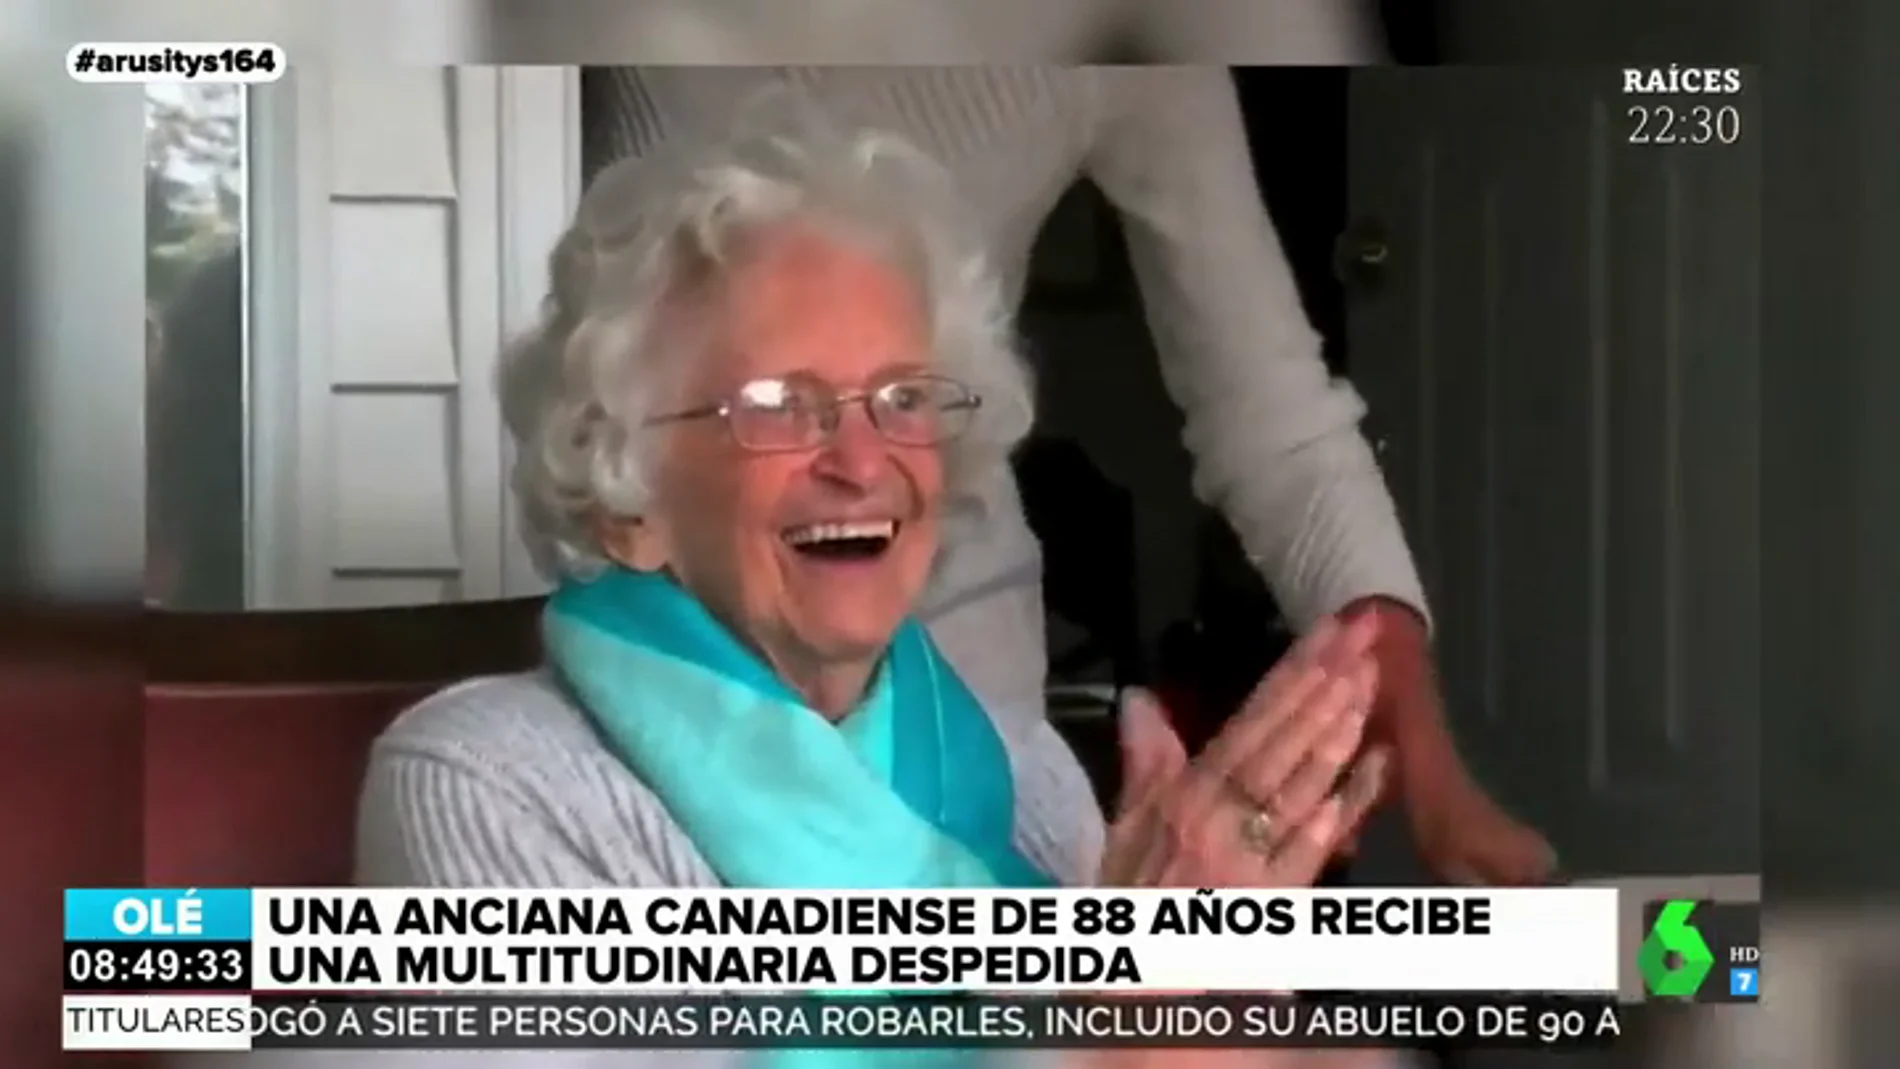 La emocionante reacción de una anciana al recibir una multitudinaria despedida antes de irse a una residencia